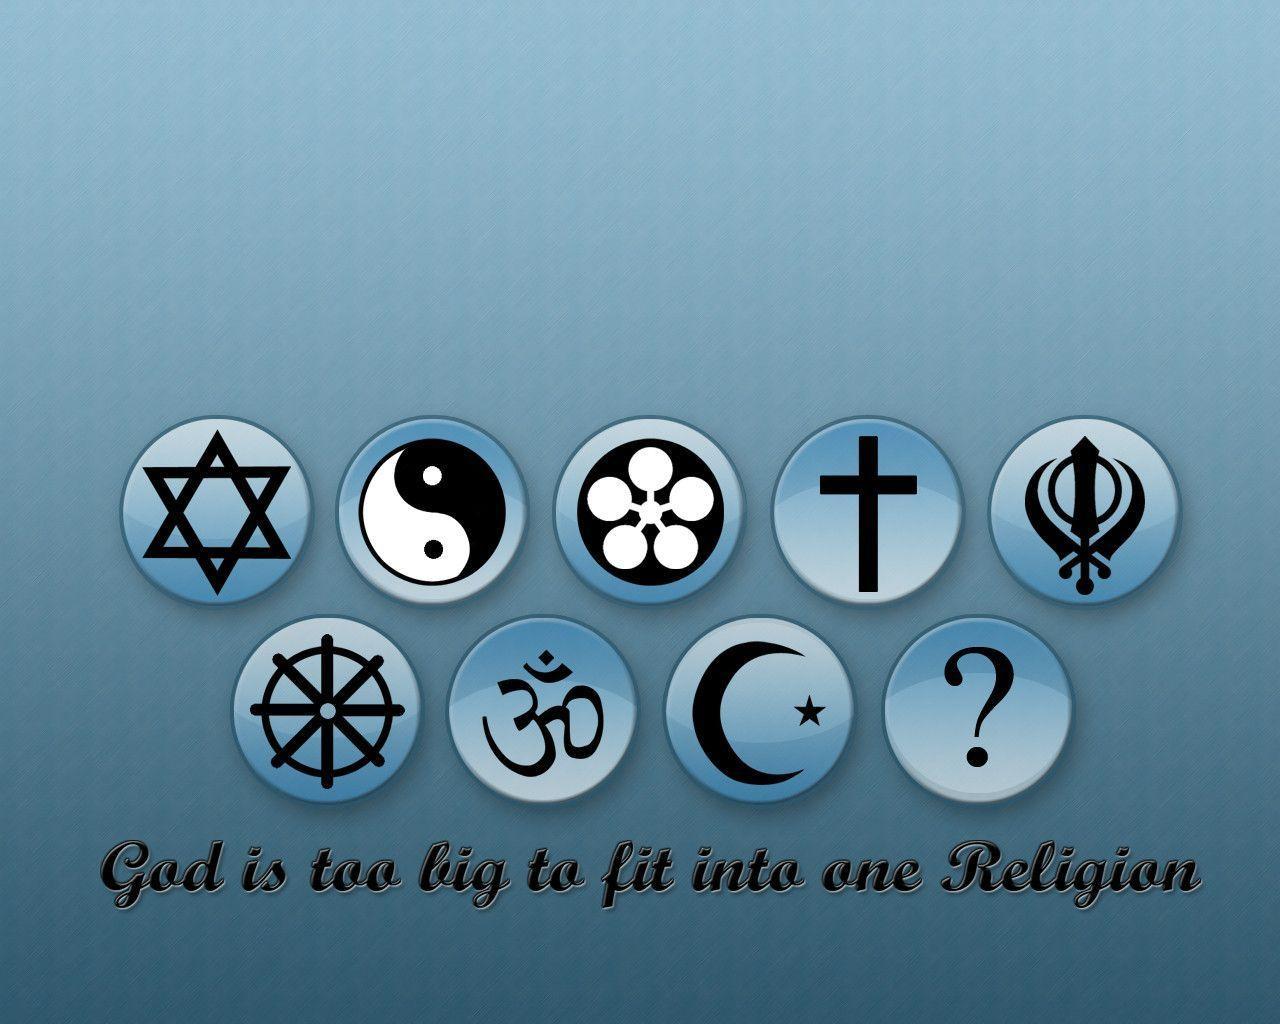 Image Religion